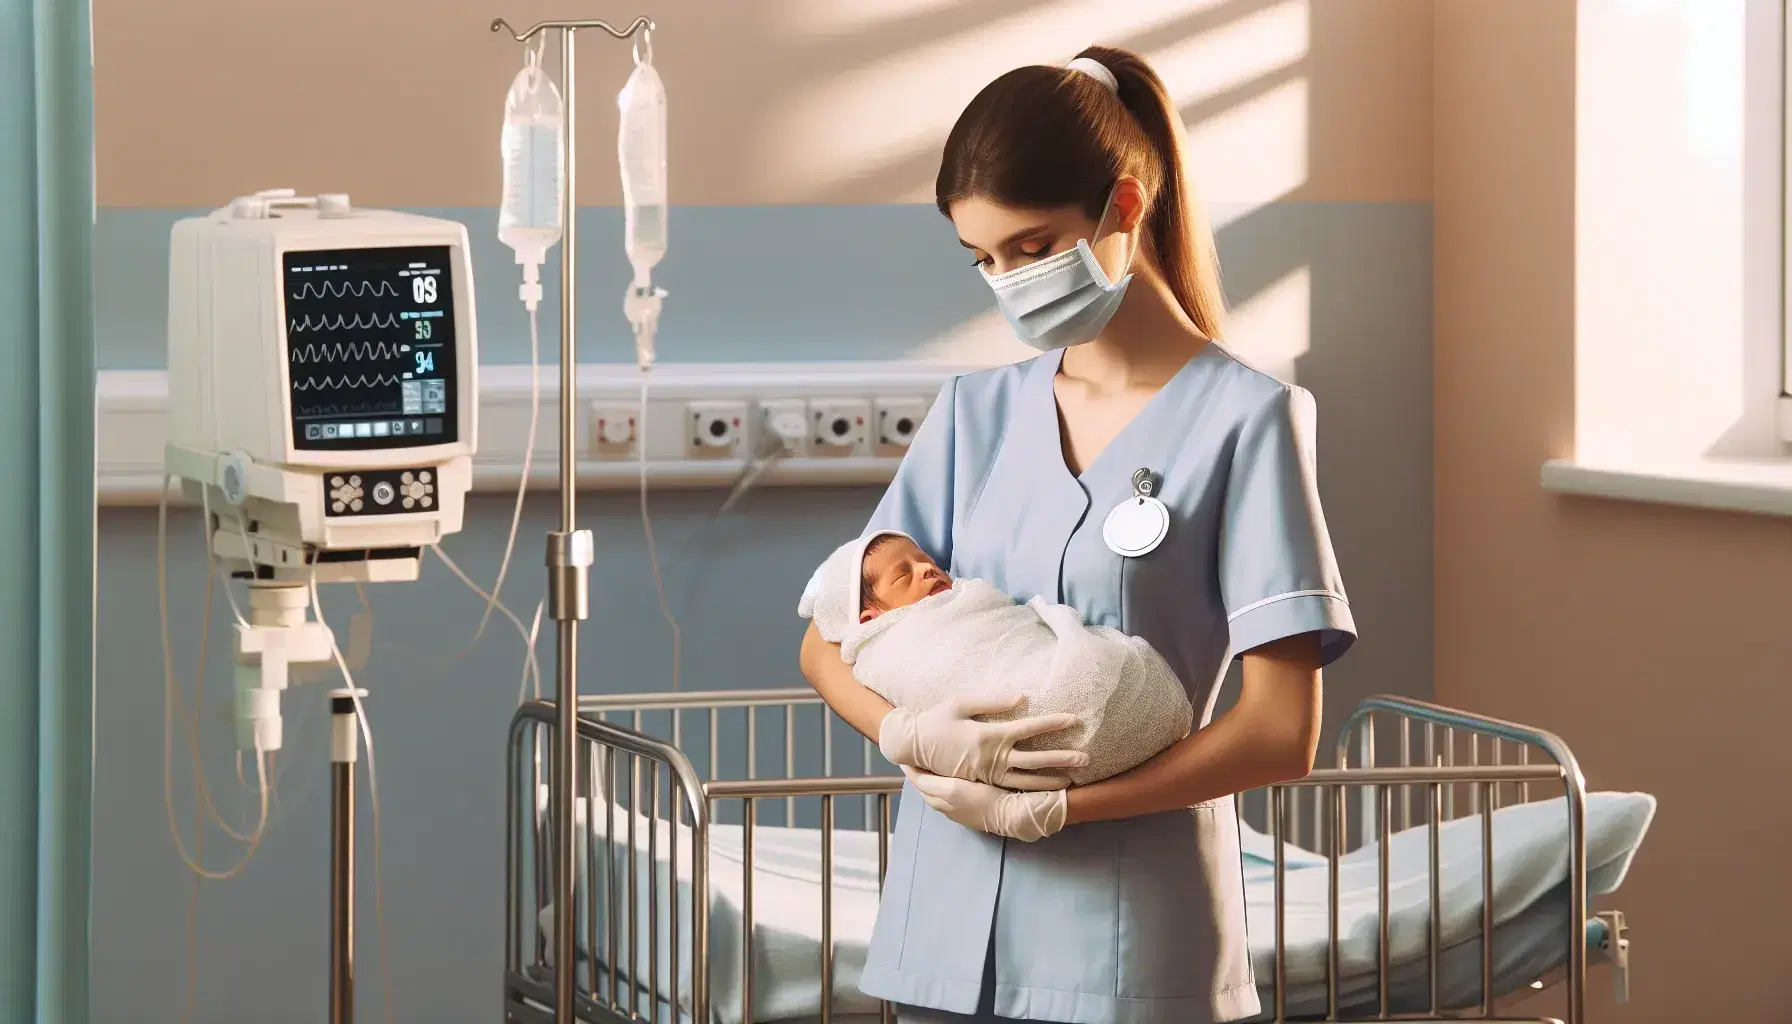 Enfermera en uniforme azul claro sostiene a recién nacido dormido envuelto en manta blanca, en habitación hospitalaria con cuna y monitor de signos vitales.